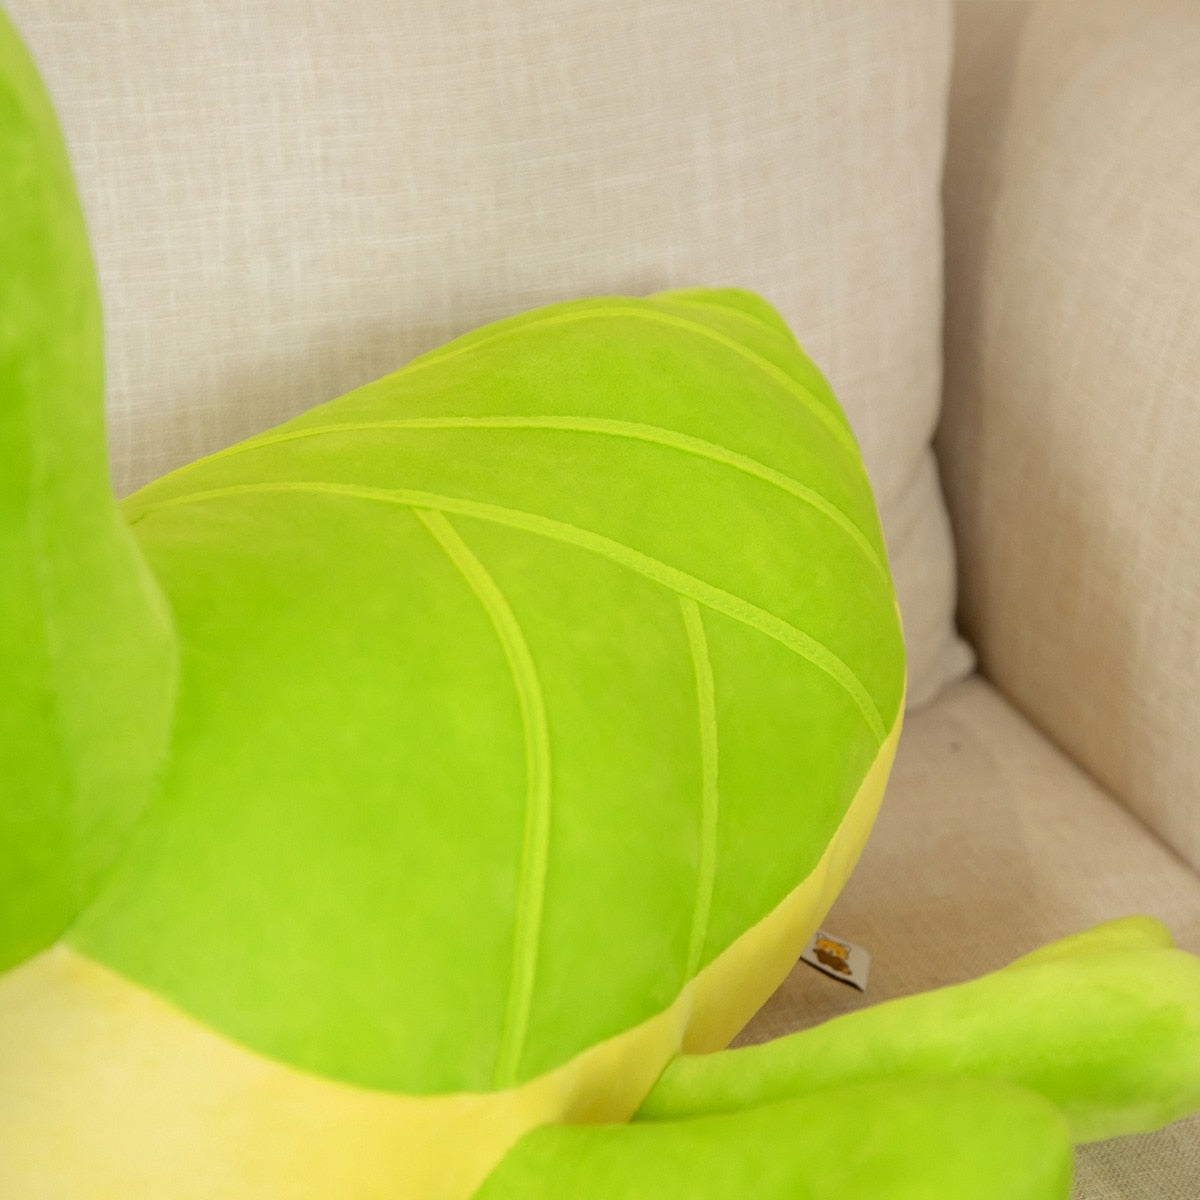 Kawaii Green Praying Mantis Plush Toy Simulation Stuffed Animal